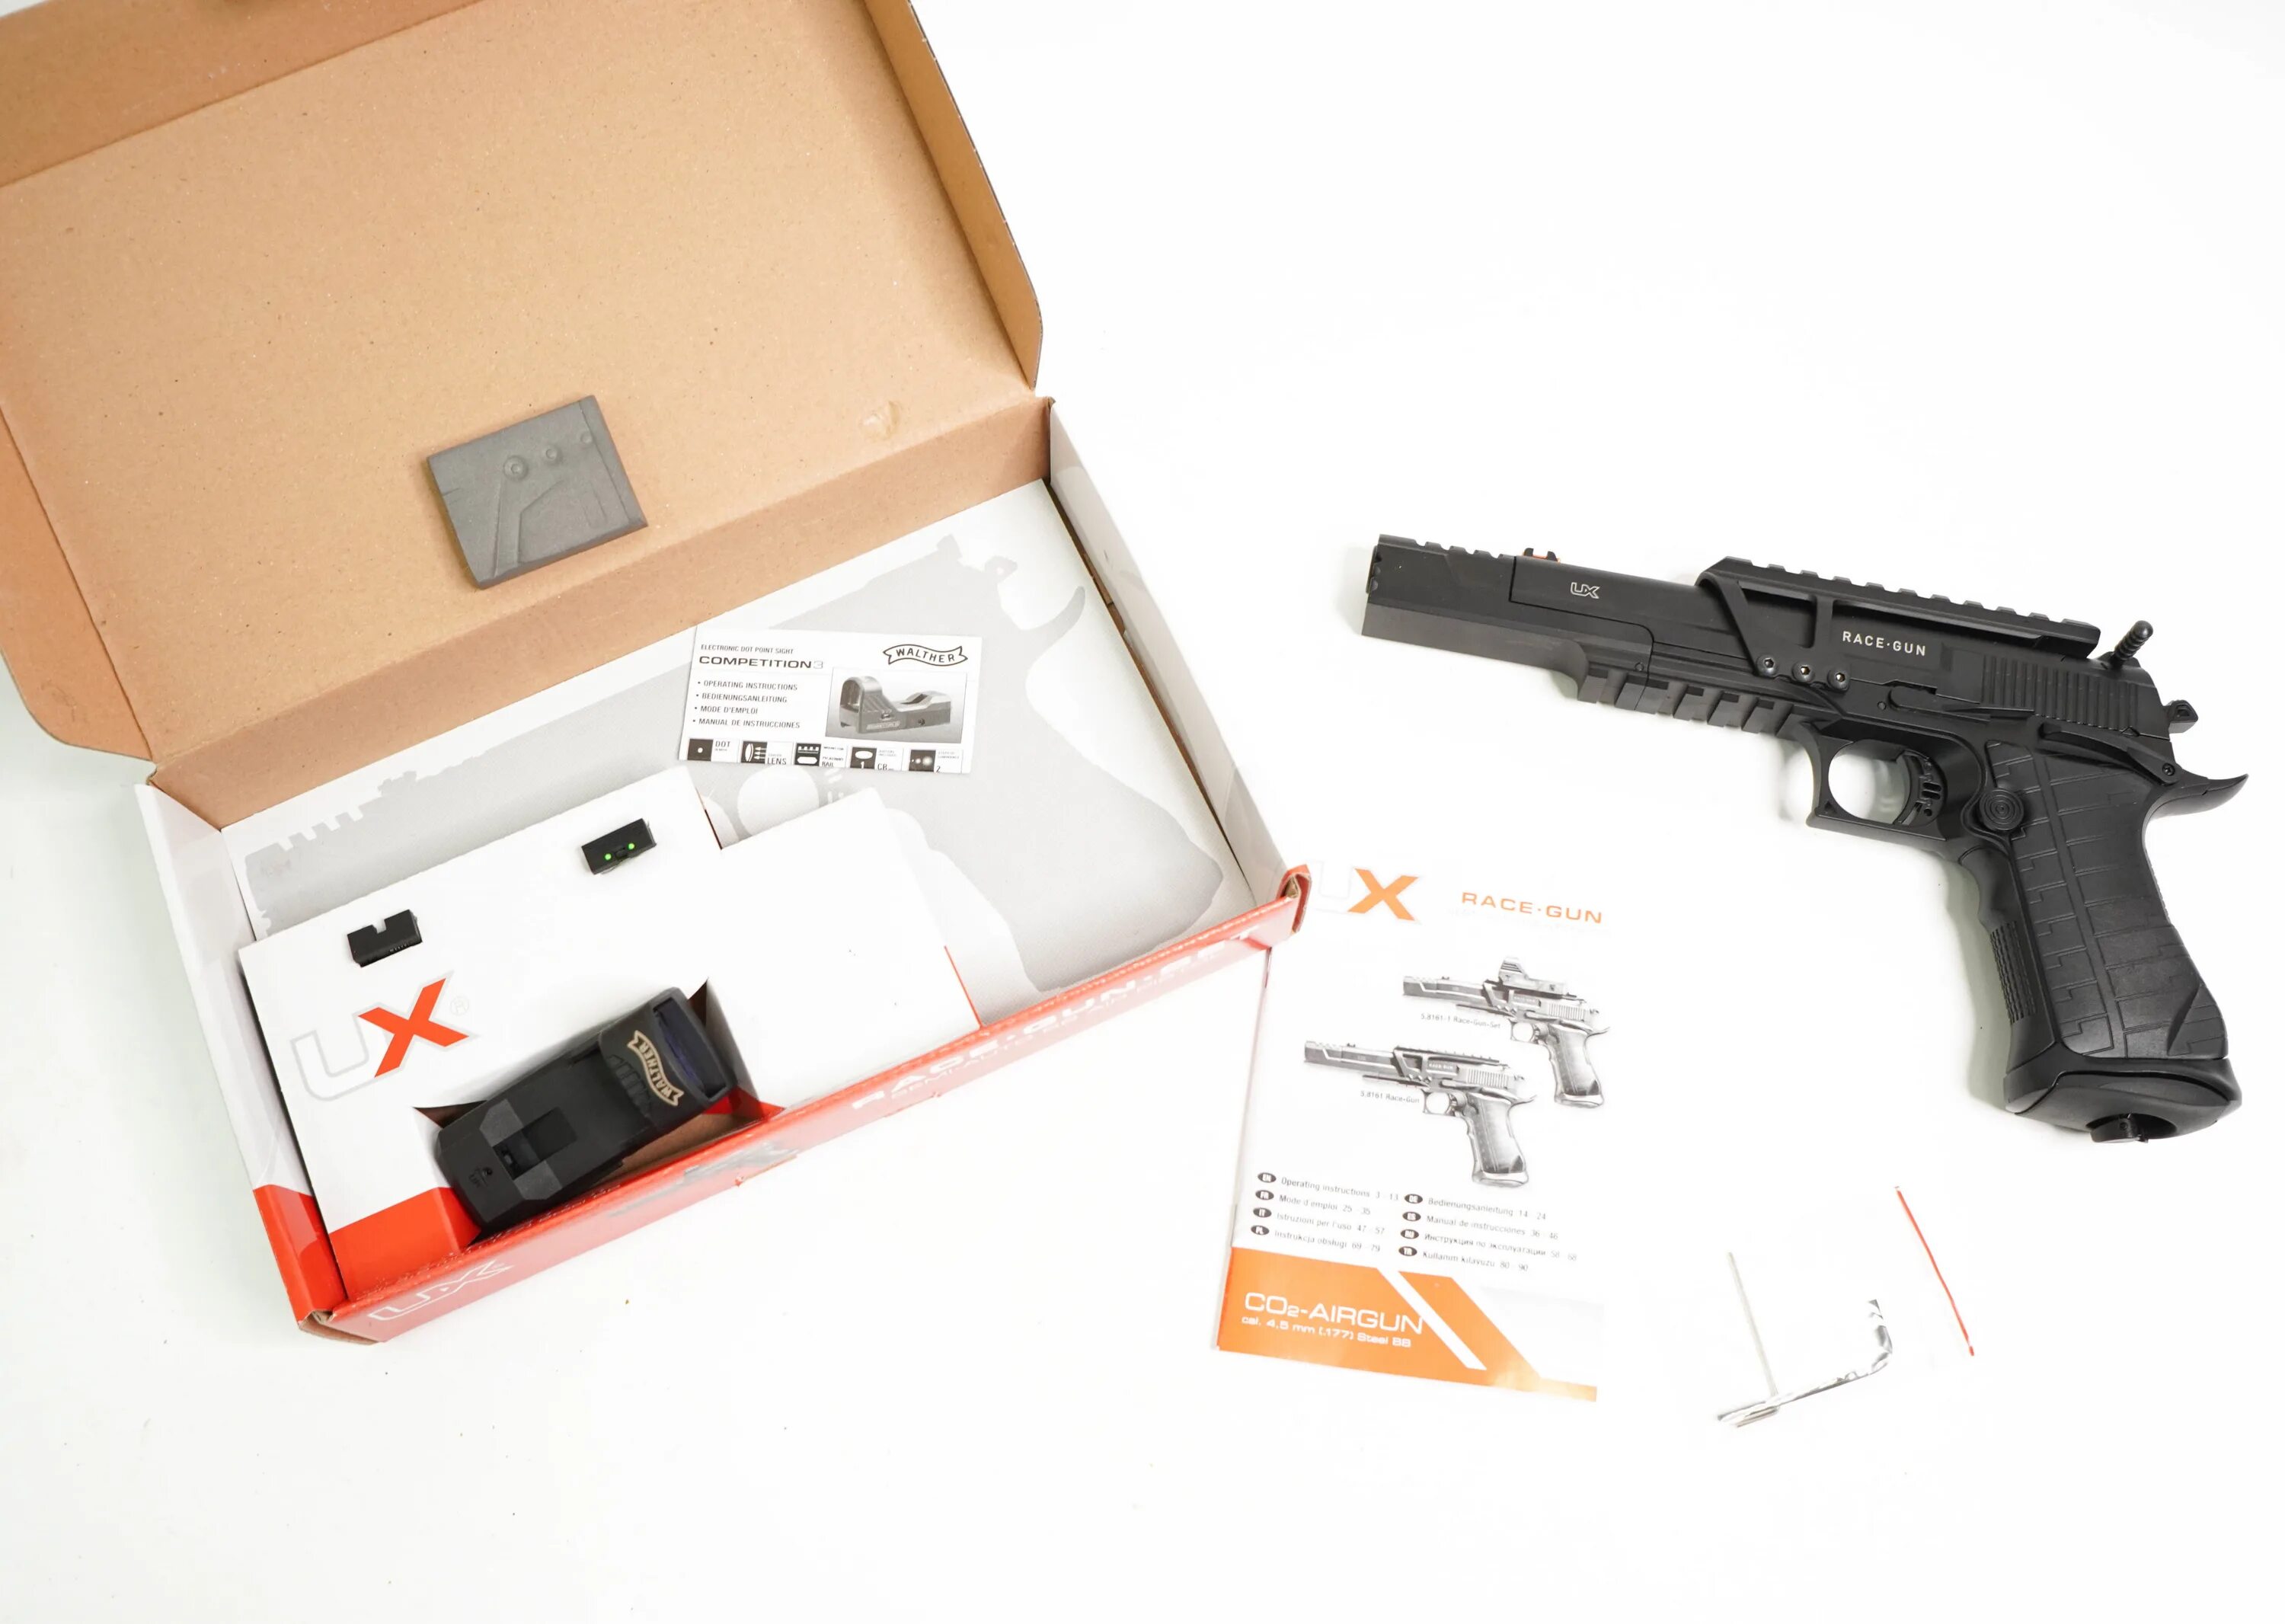 Kit gun. Umarex Race Gun Kit (Blowback, коллиматор). Umarex Race-Gun Kit 4,5 мм. Umarex Race Gun Kit (Blowback, коллиматор) цена.